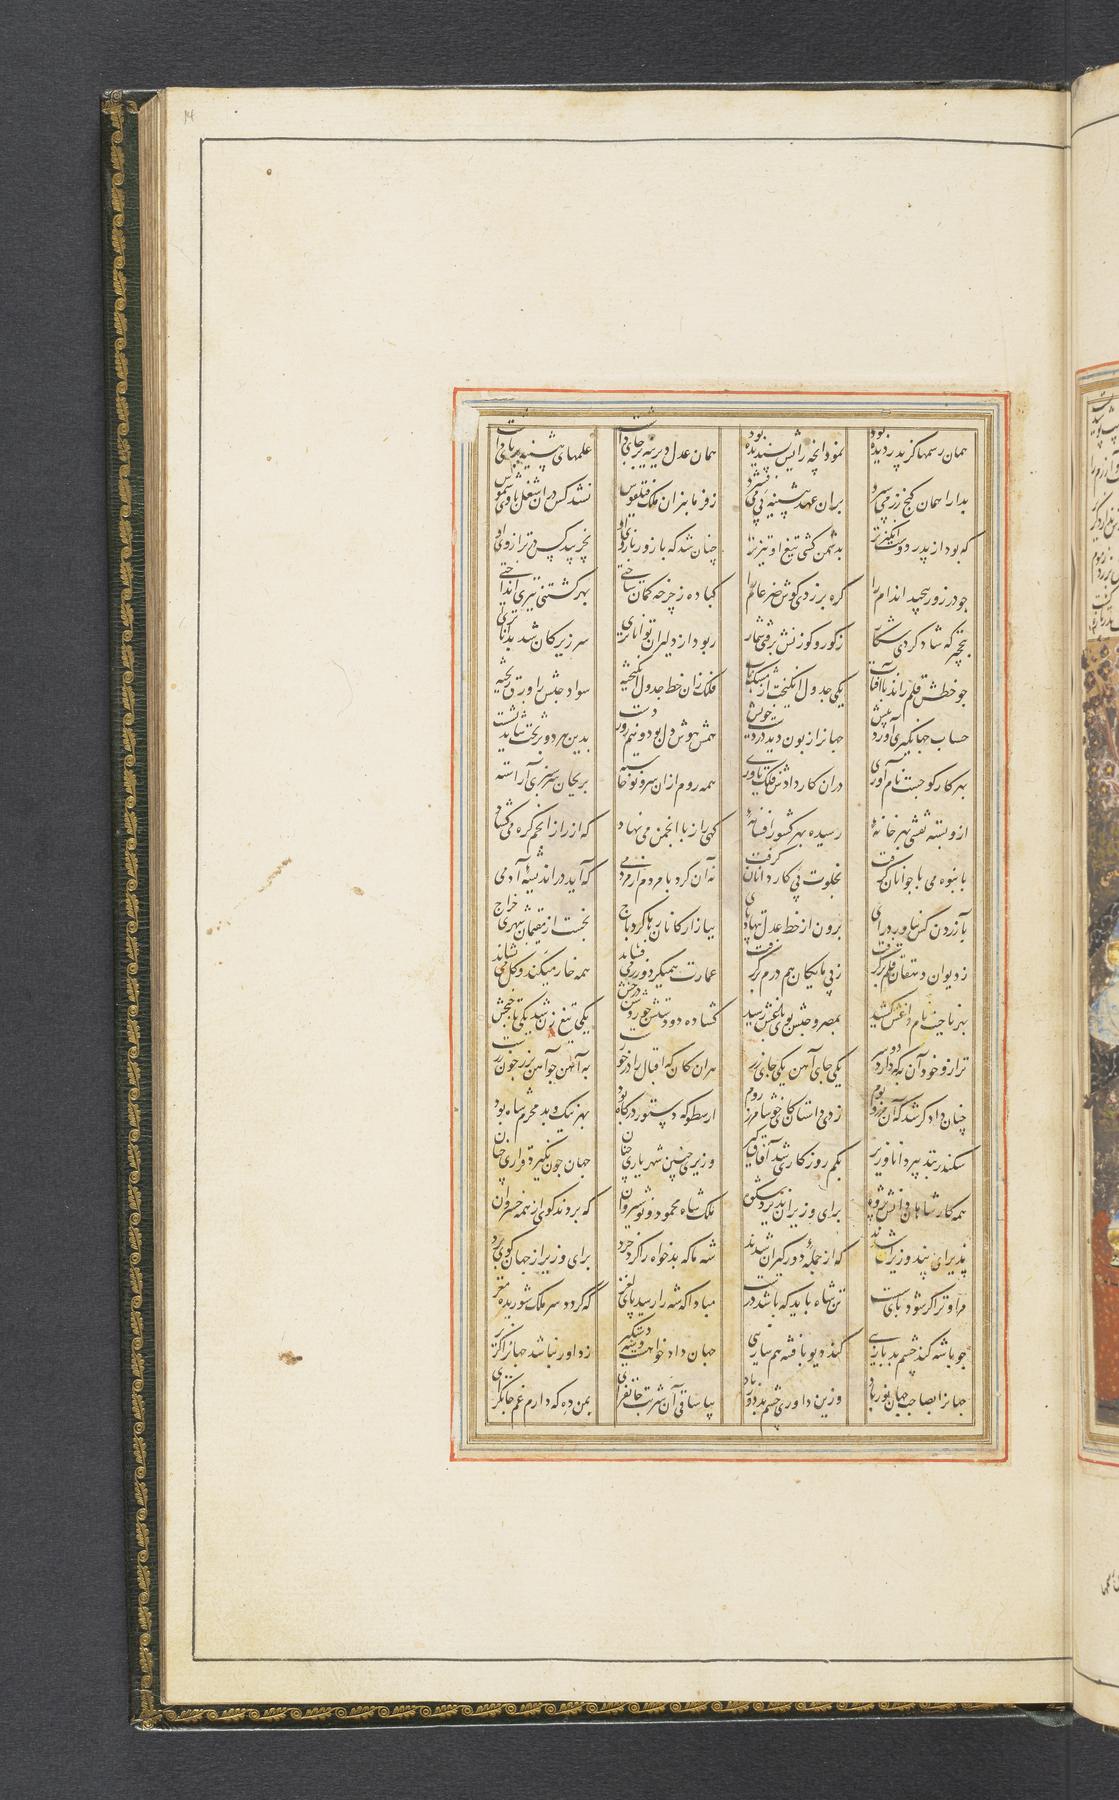 Urdu Translation Archives -  Blog